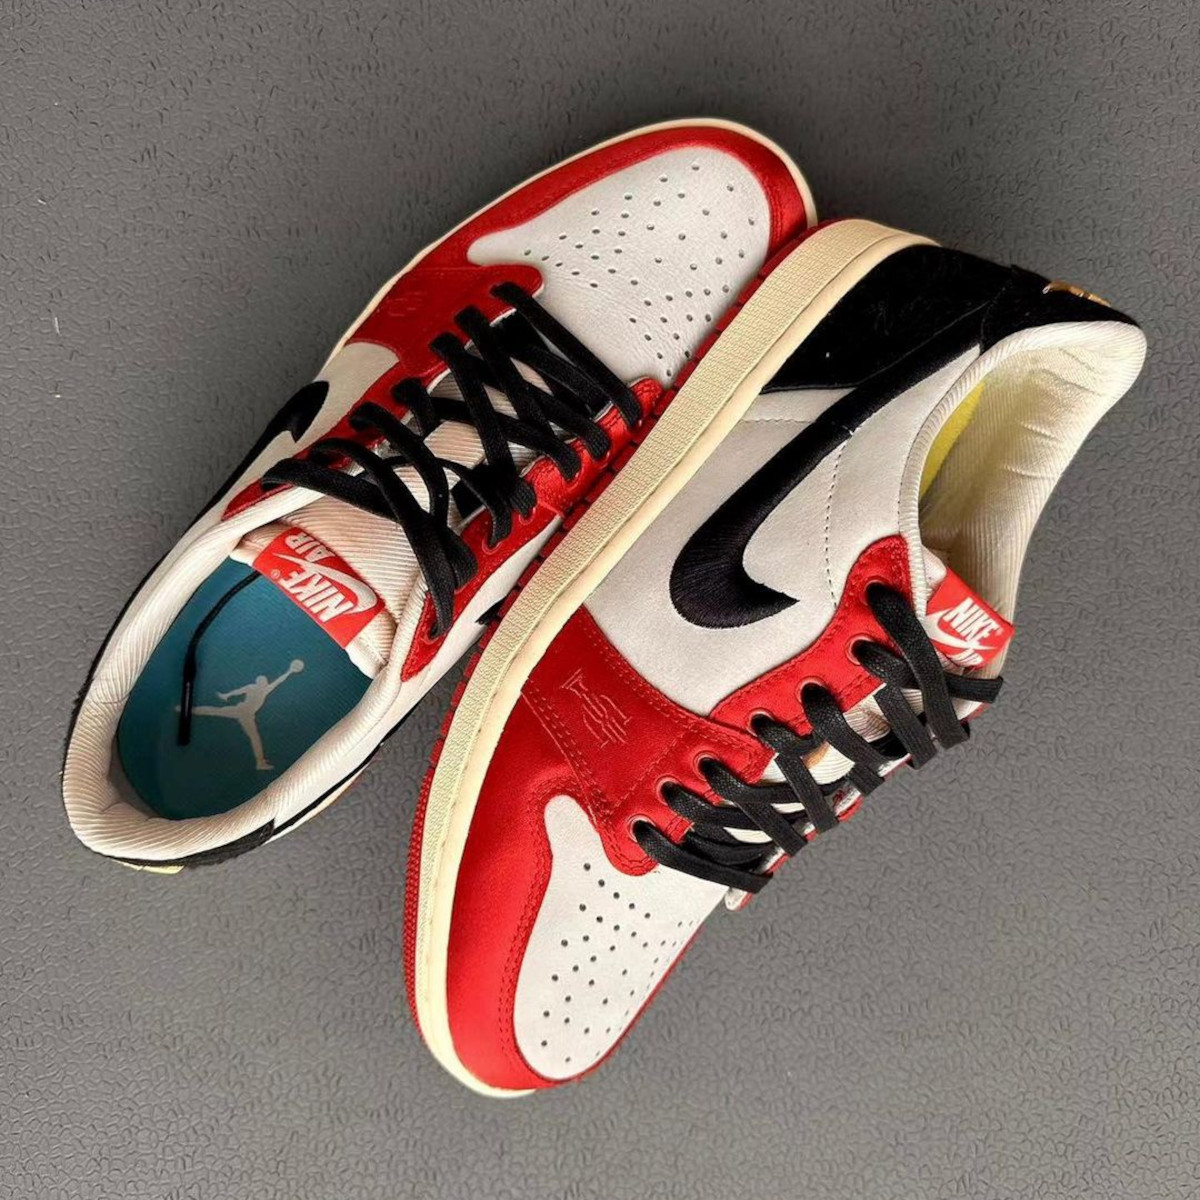 First Look: Trophy Room x Air Jordan 1 Low OG | Sneaker News